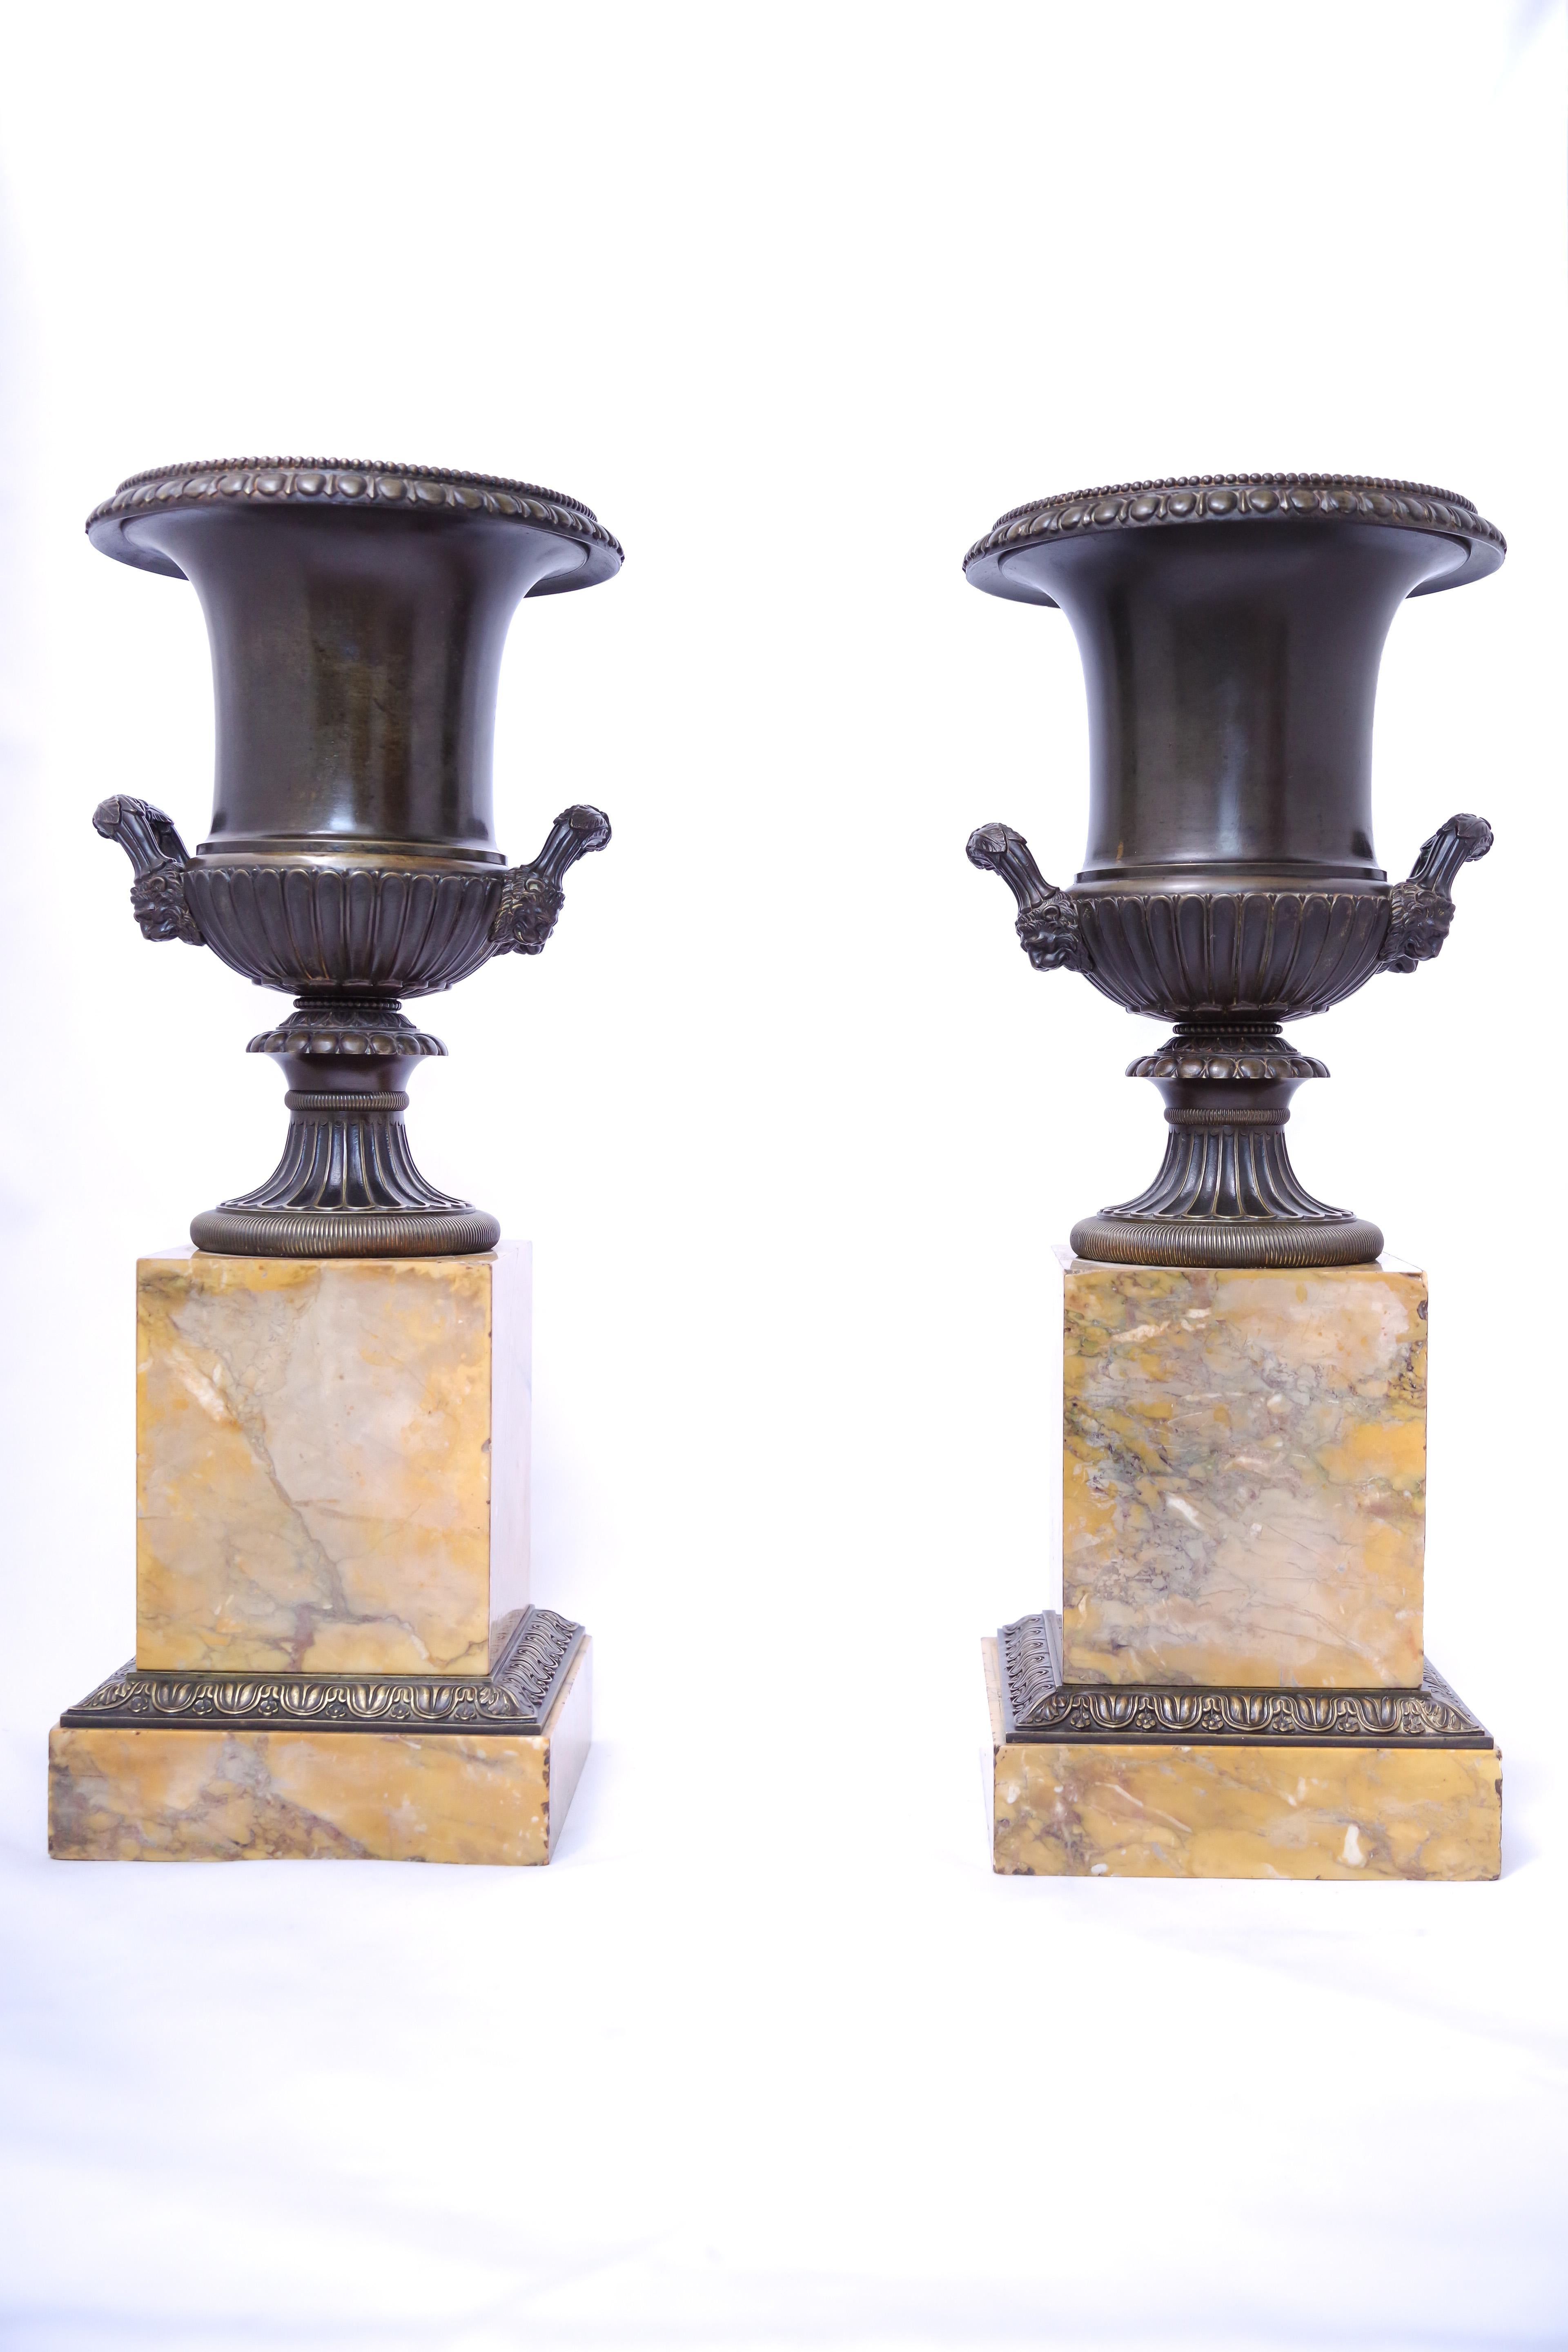 Ein Paar Medici-Vasen aus Bronze aus der Zeit Karls X., um 1830. Die Sockel bestehen aus dem gelben Siena-Marmor, der im Frankreich des frühen bis mittleren Jahrhunderts so beliebt war. Die schwarz-grün patinierten Vasen sind mit fein ziselierten